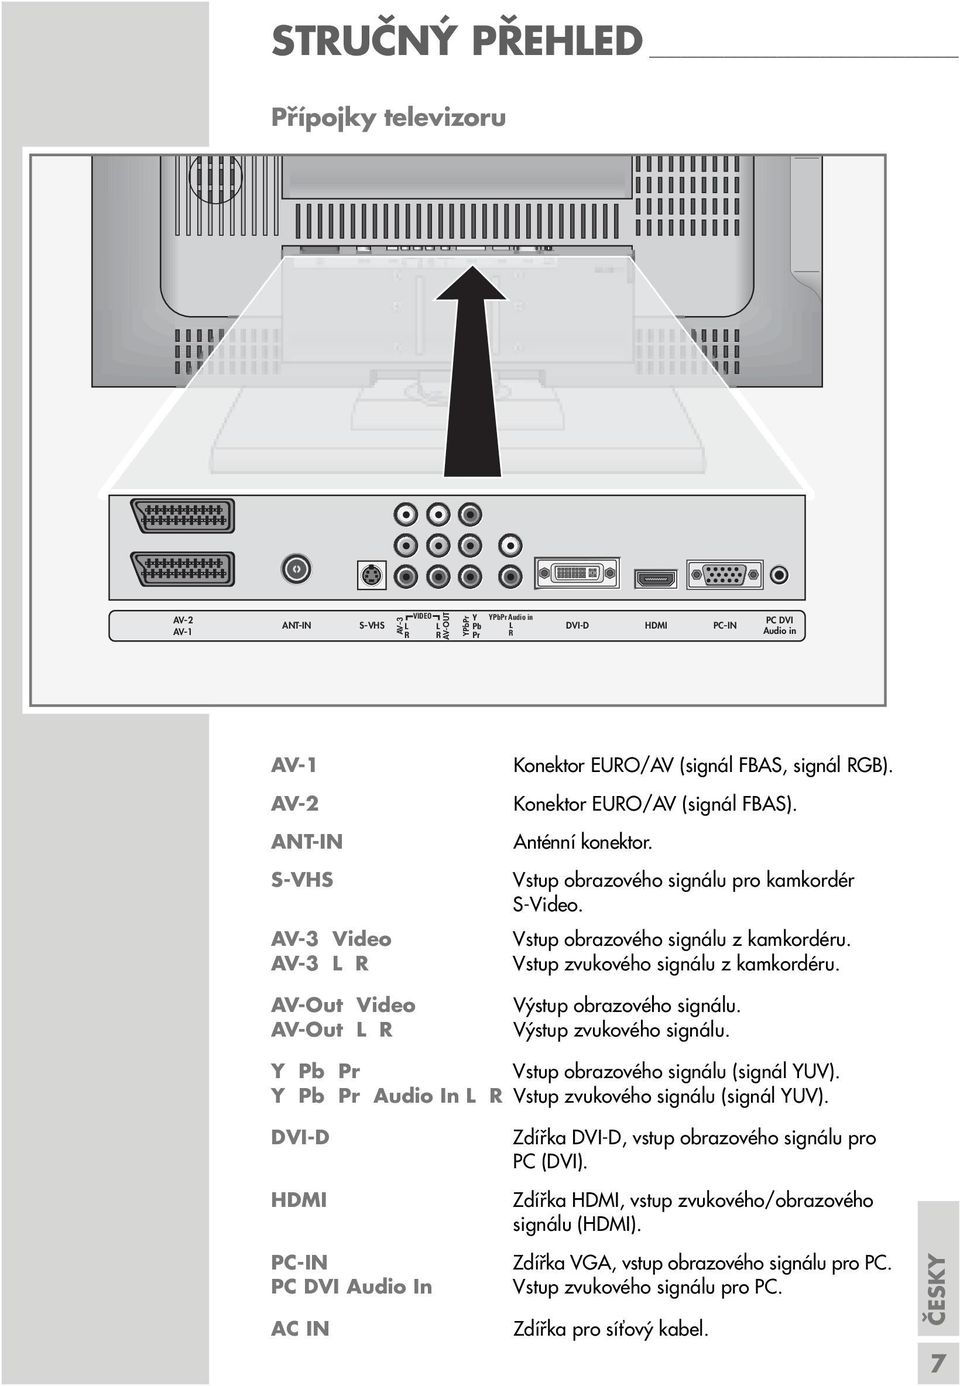 Konektor EURO/AV (signál FBAS). Anténní konektor. Vstup obrazového signálu pro kamkordér S-Video. Vstup obrazového signálu z kamkordéru. Vstup zvukového signálu z kamkordéru.